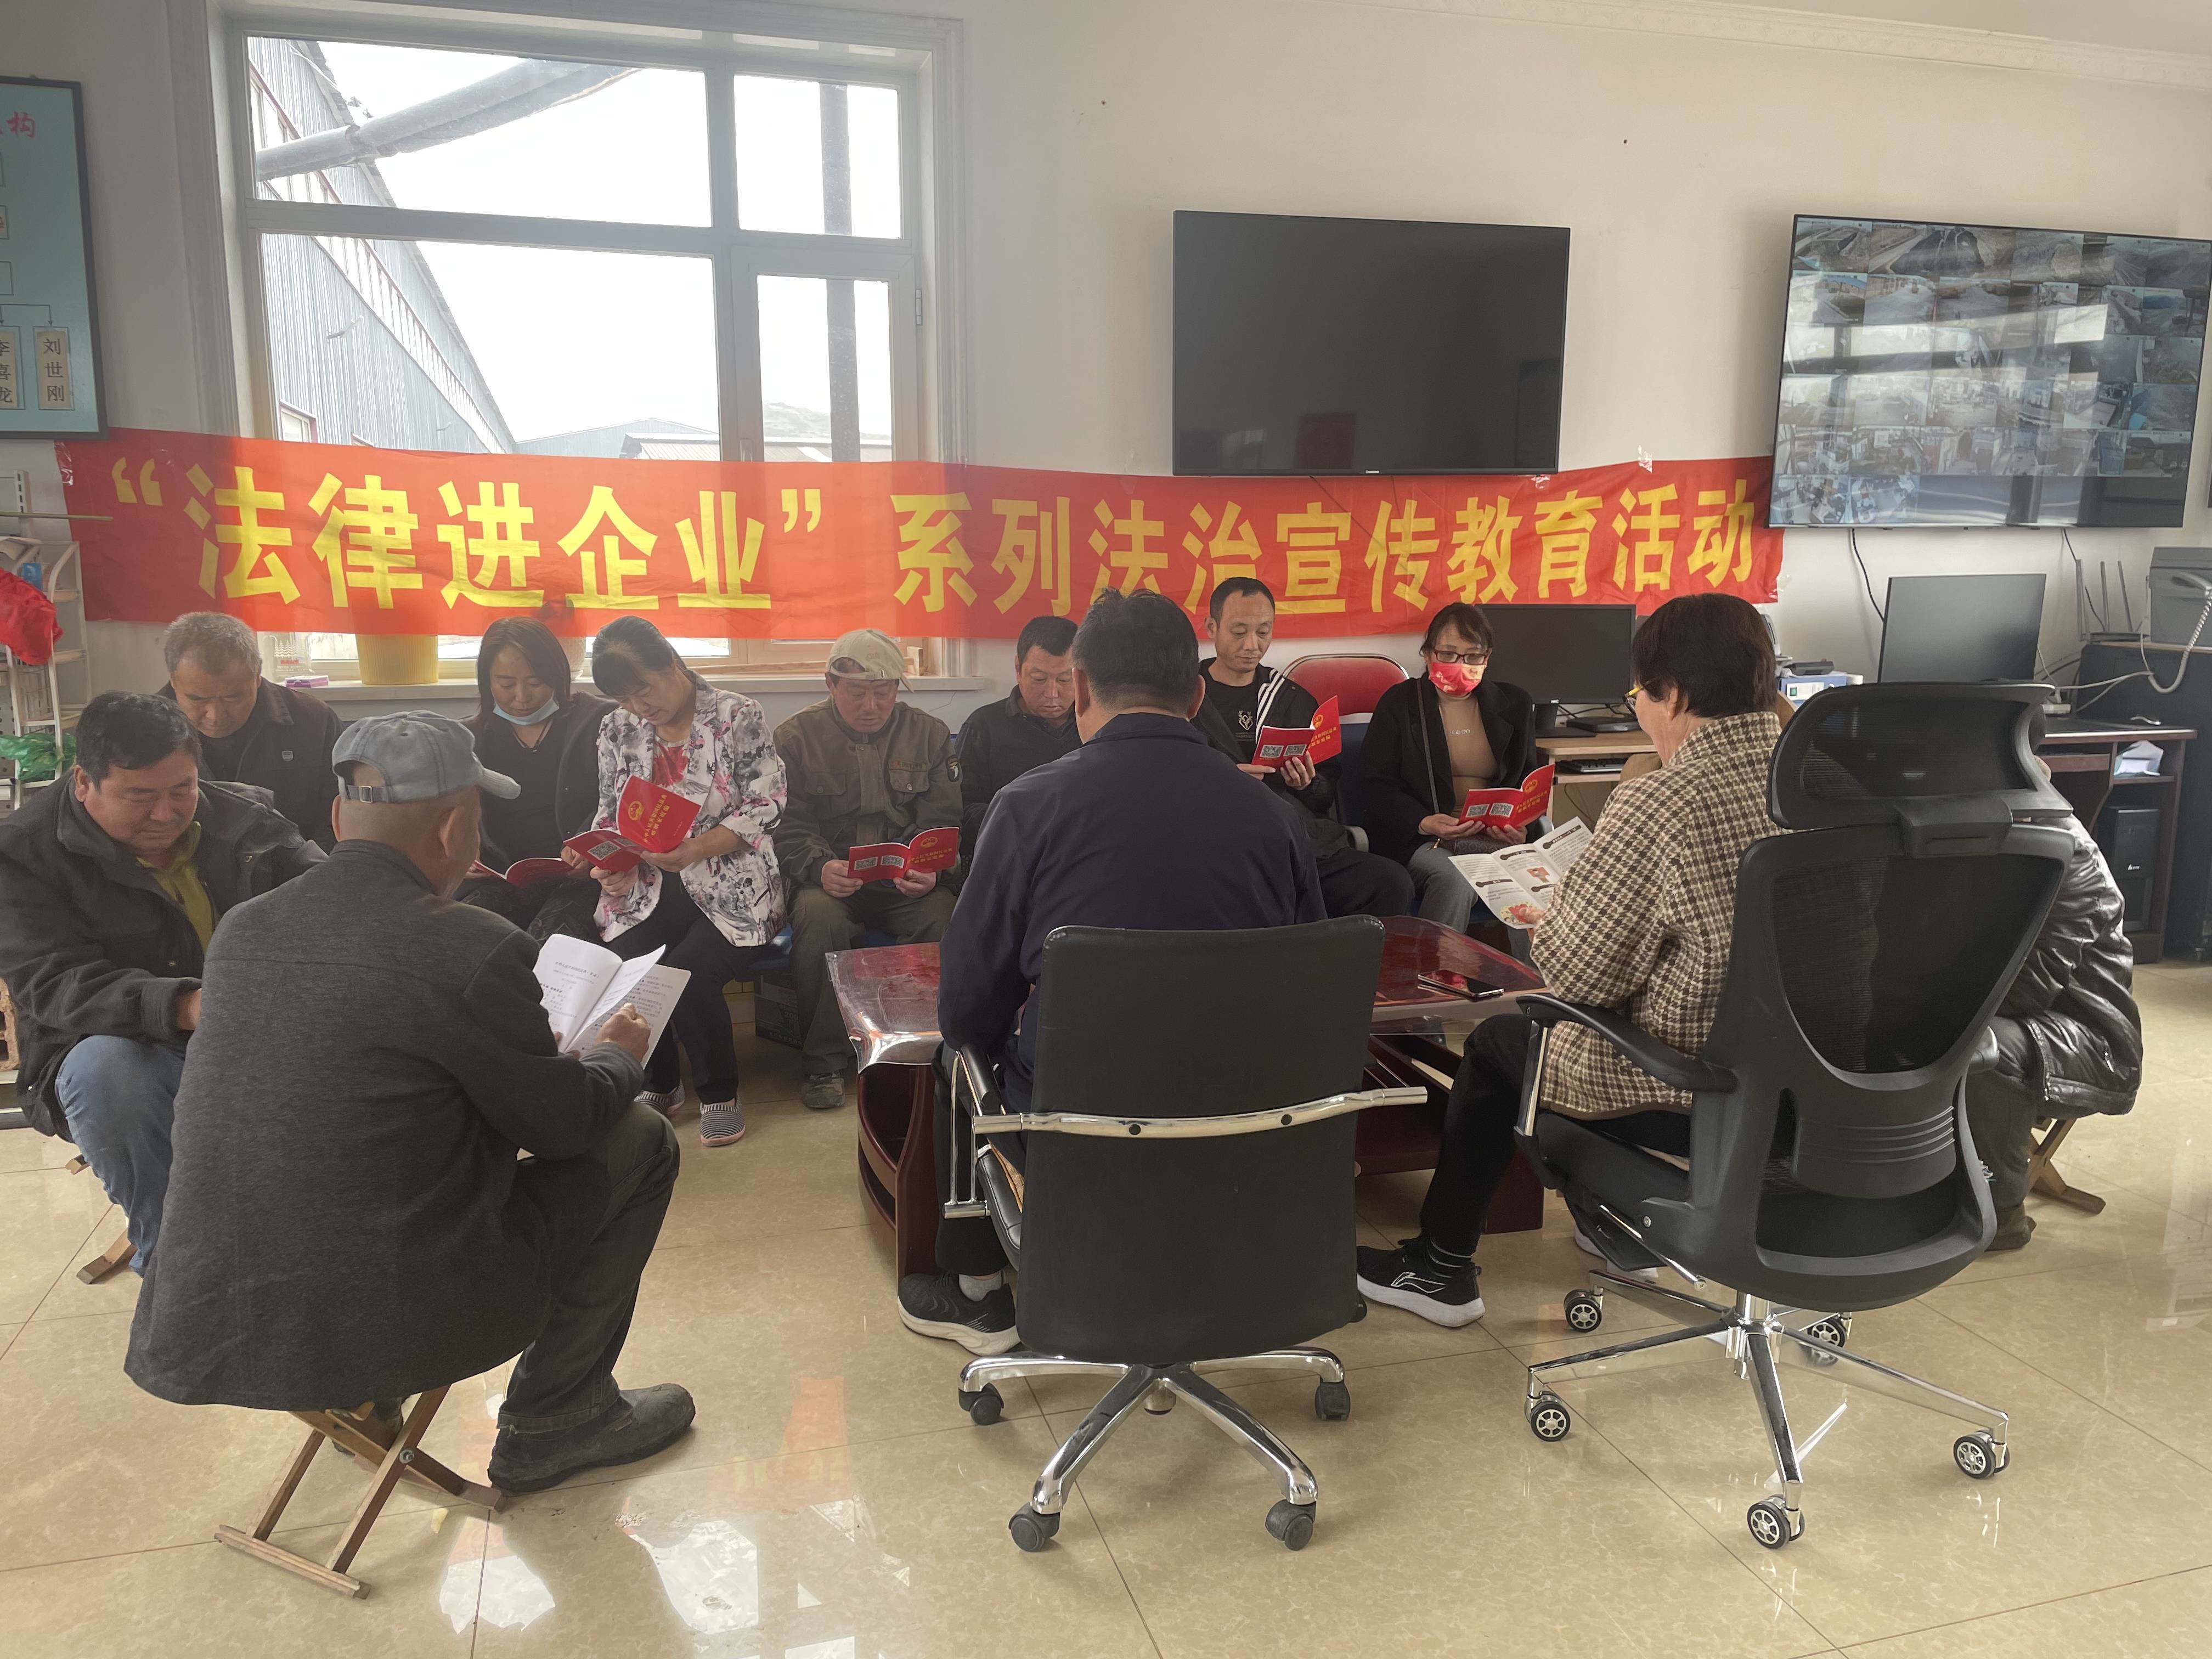 延吉市司法局小营司法所开展“送法进企业”普法宣传活动